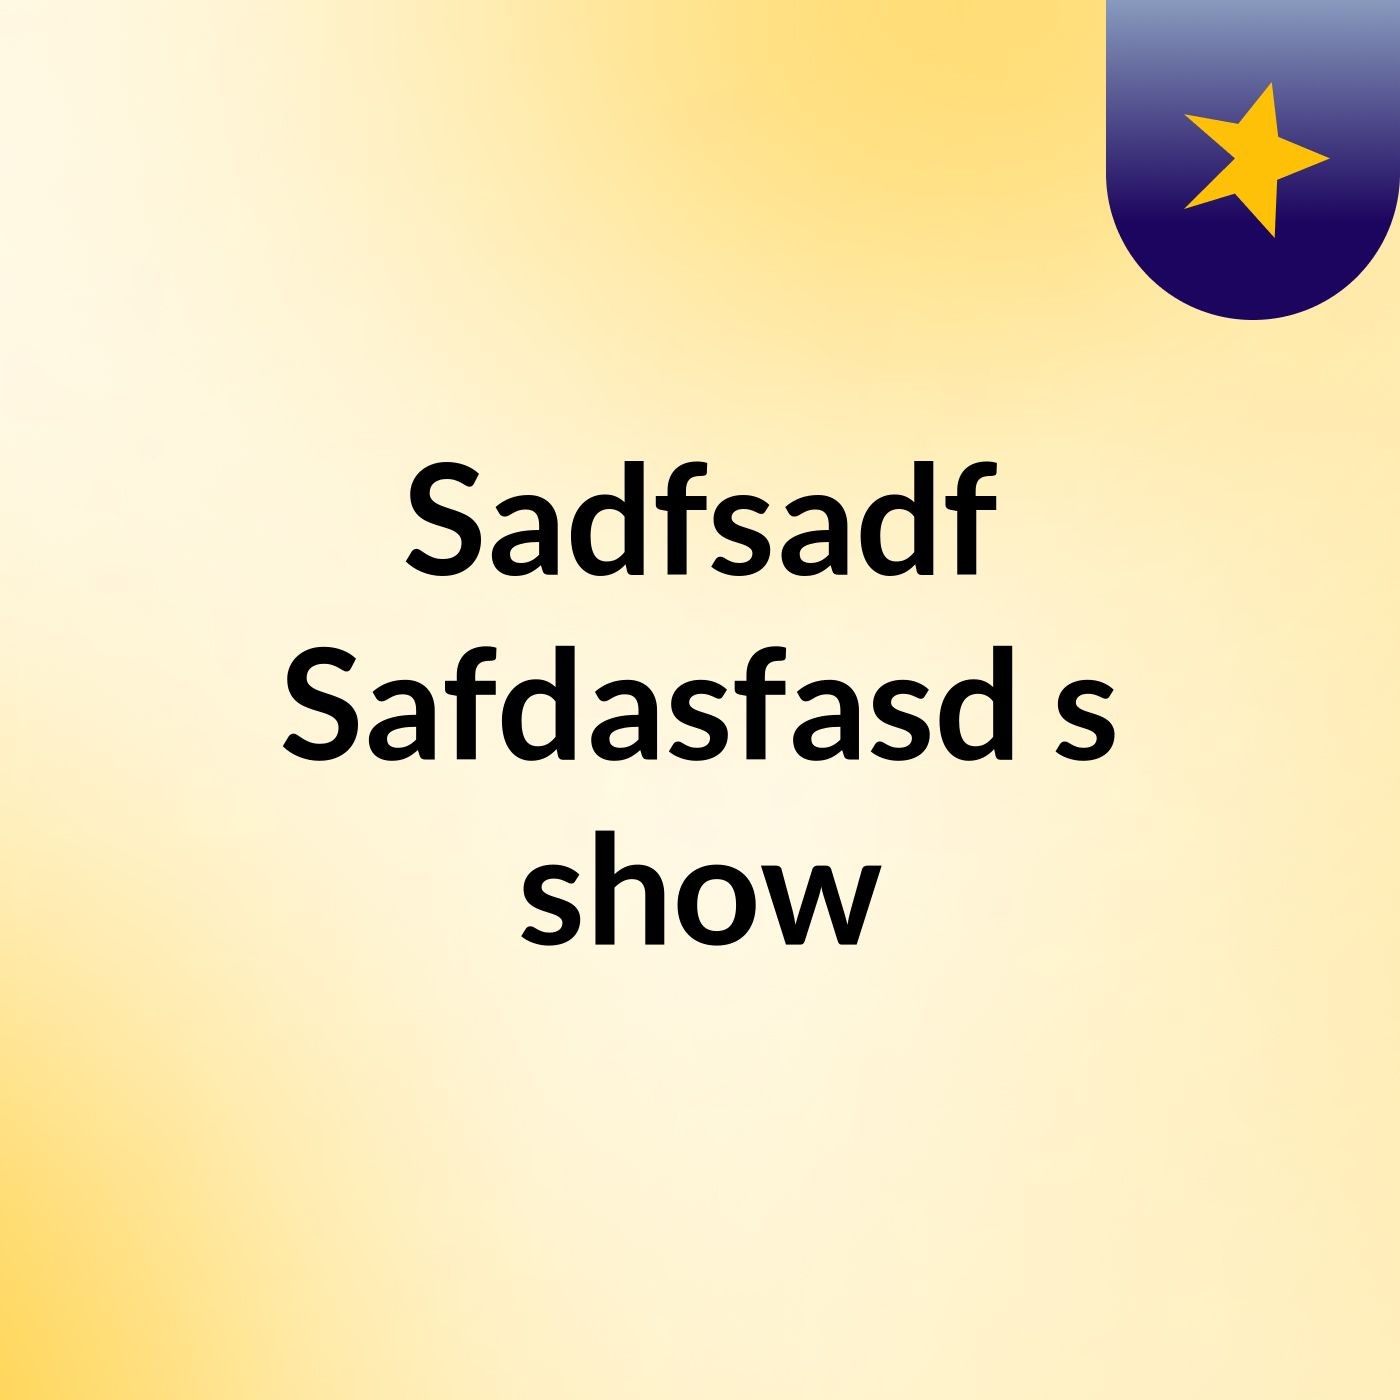 Sadfsadf Safdasfasd's show